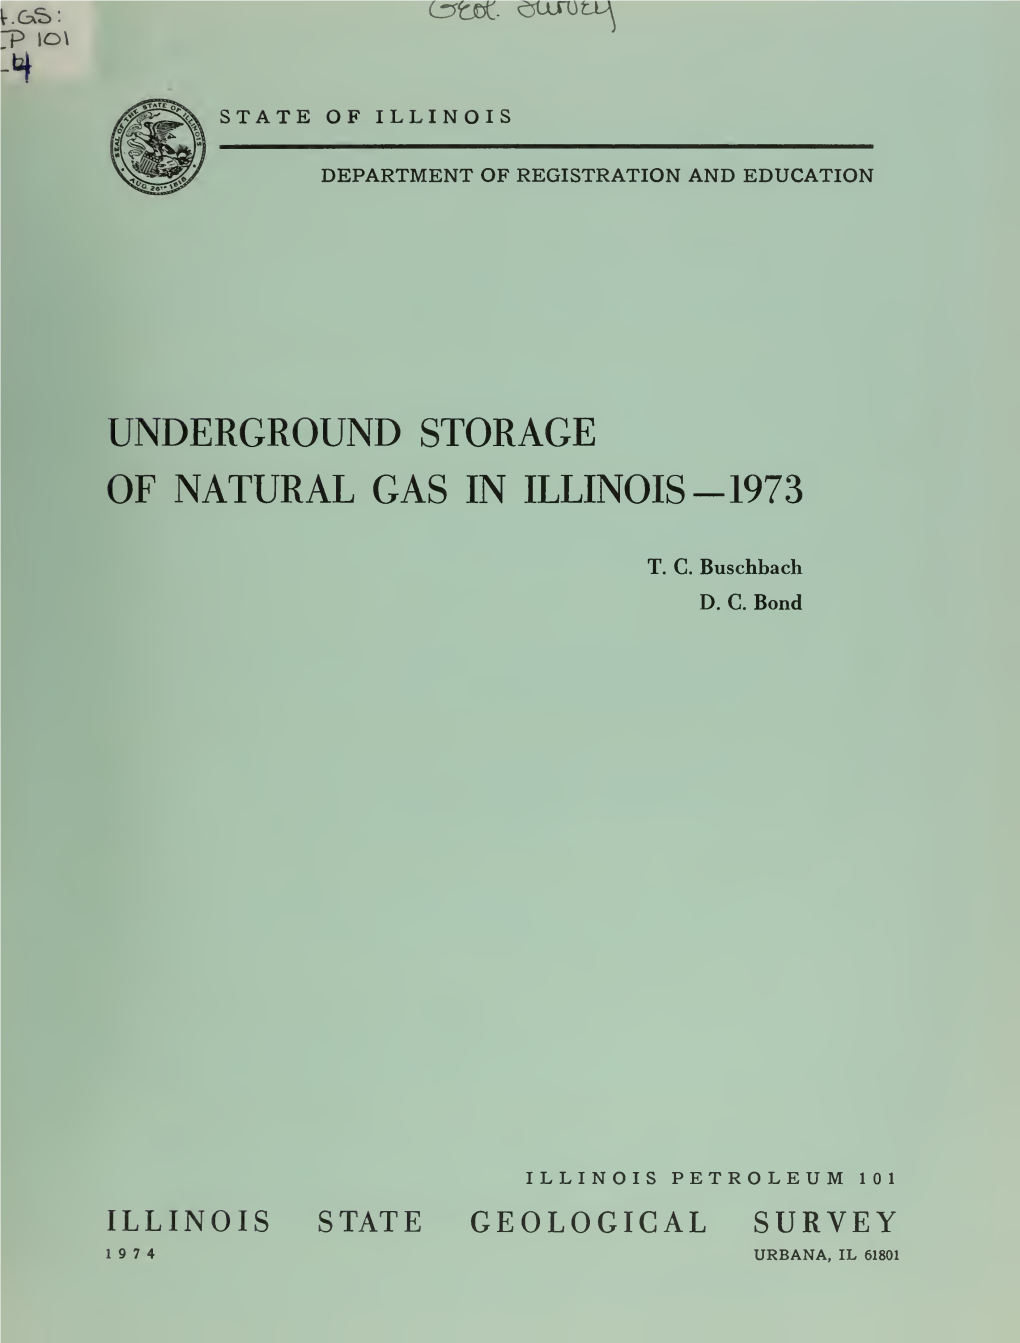 Underground Storage of Natural Gas in Illinois, 1973